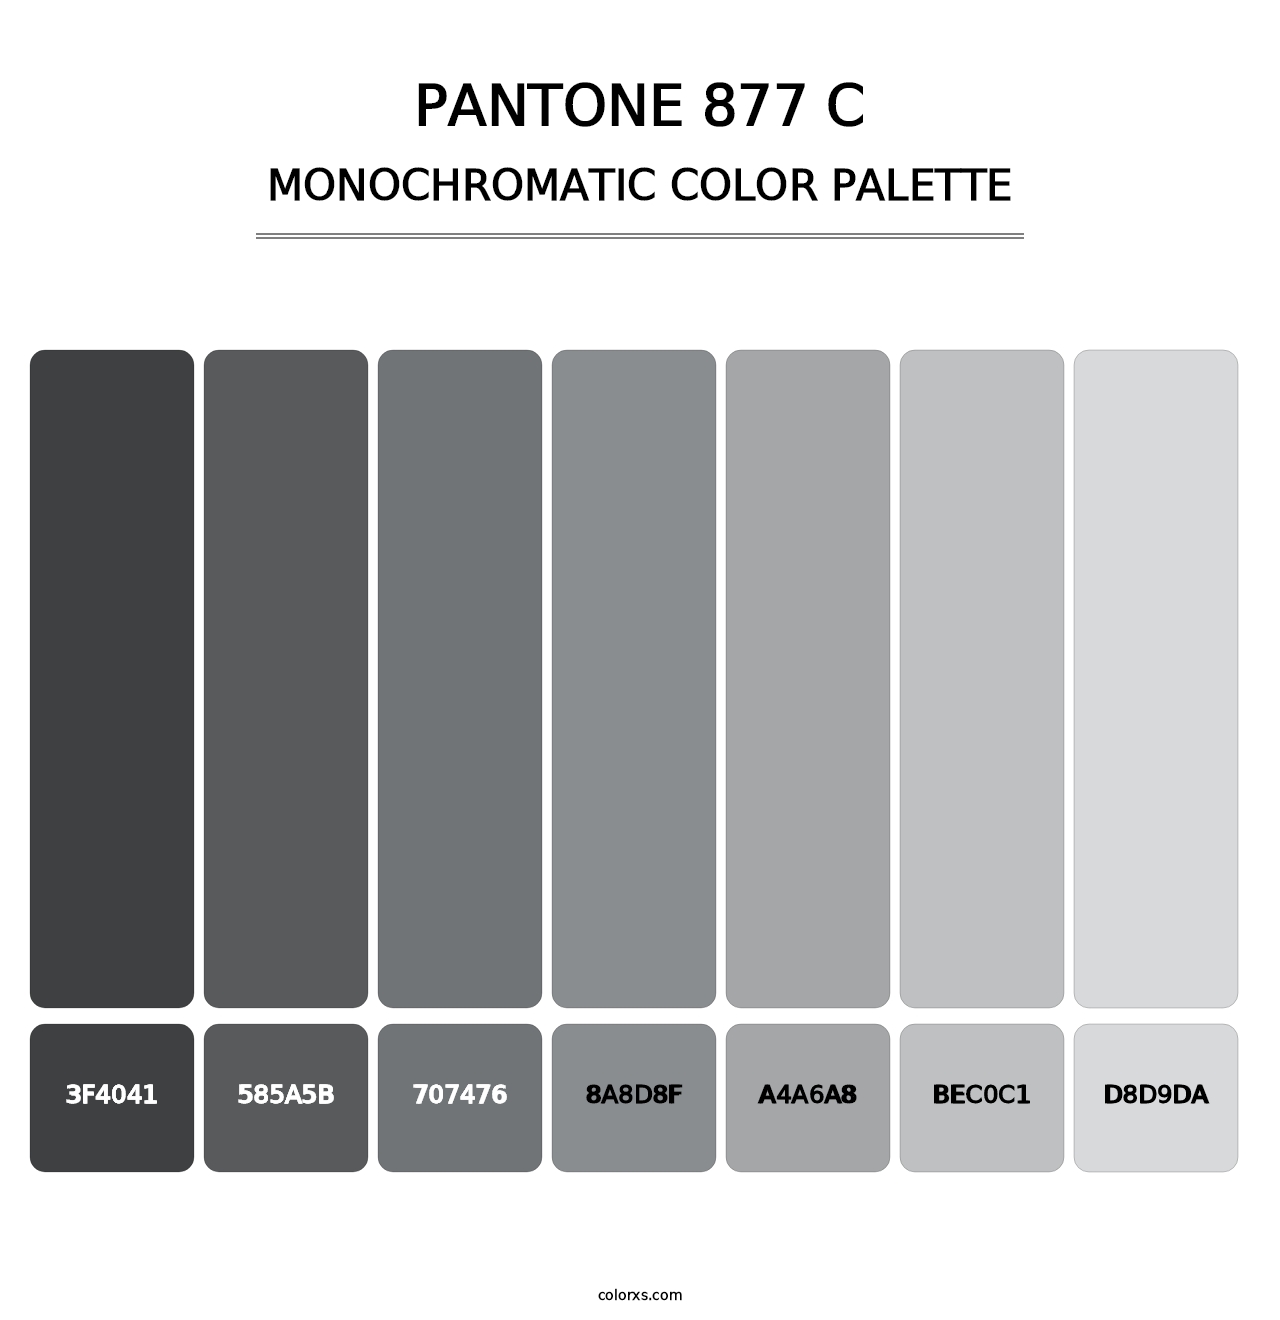 PANTONE 877 C - Monochromatic Color Palette